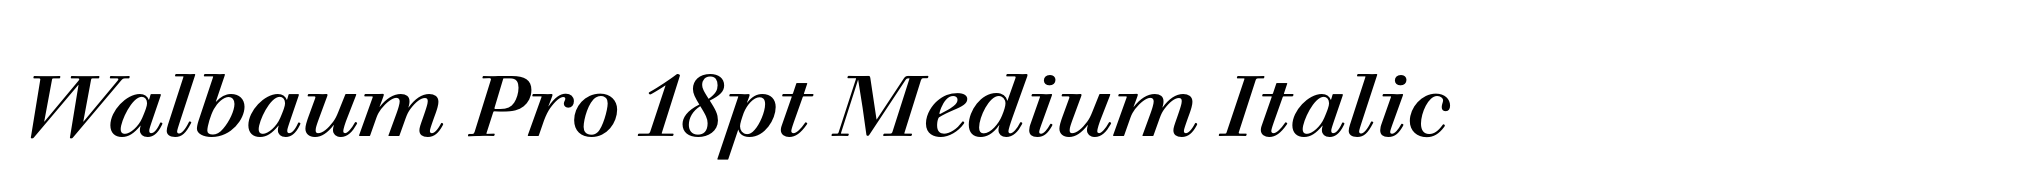 Walbaum Pro 18pt Medium Italic image